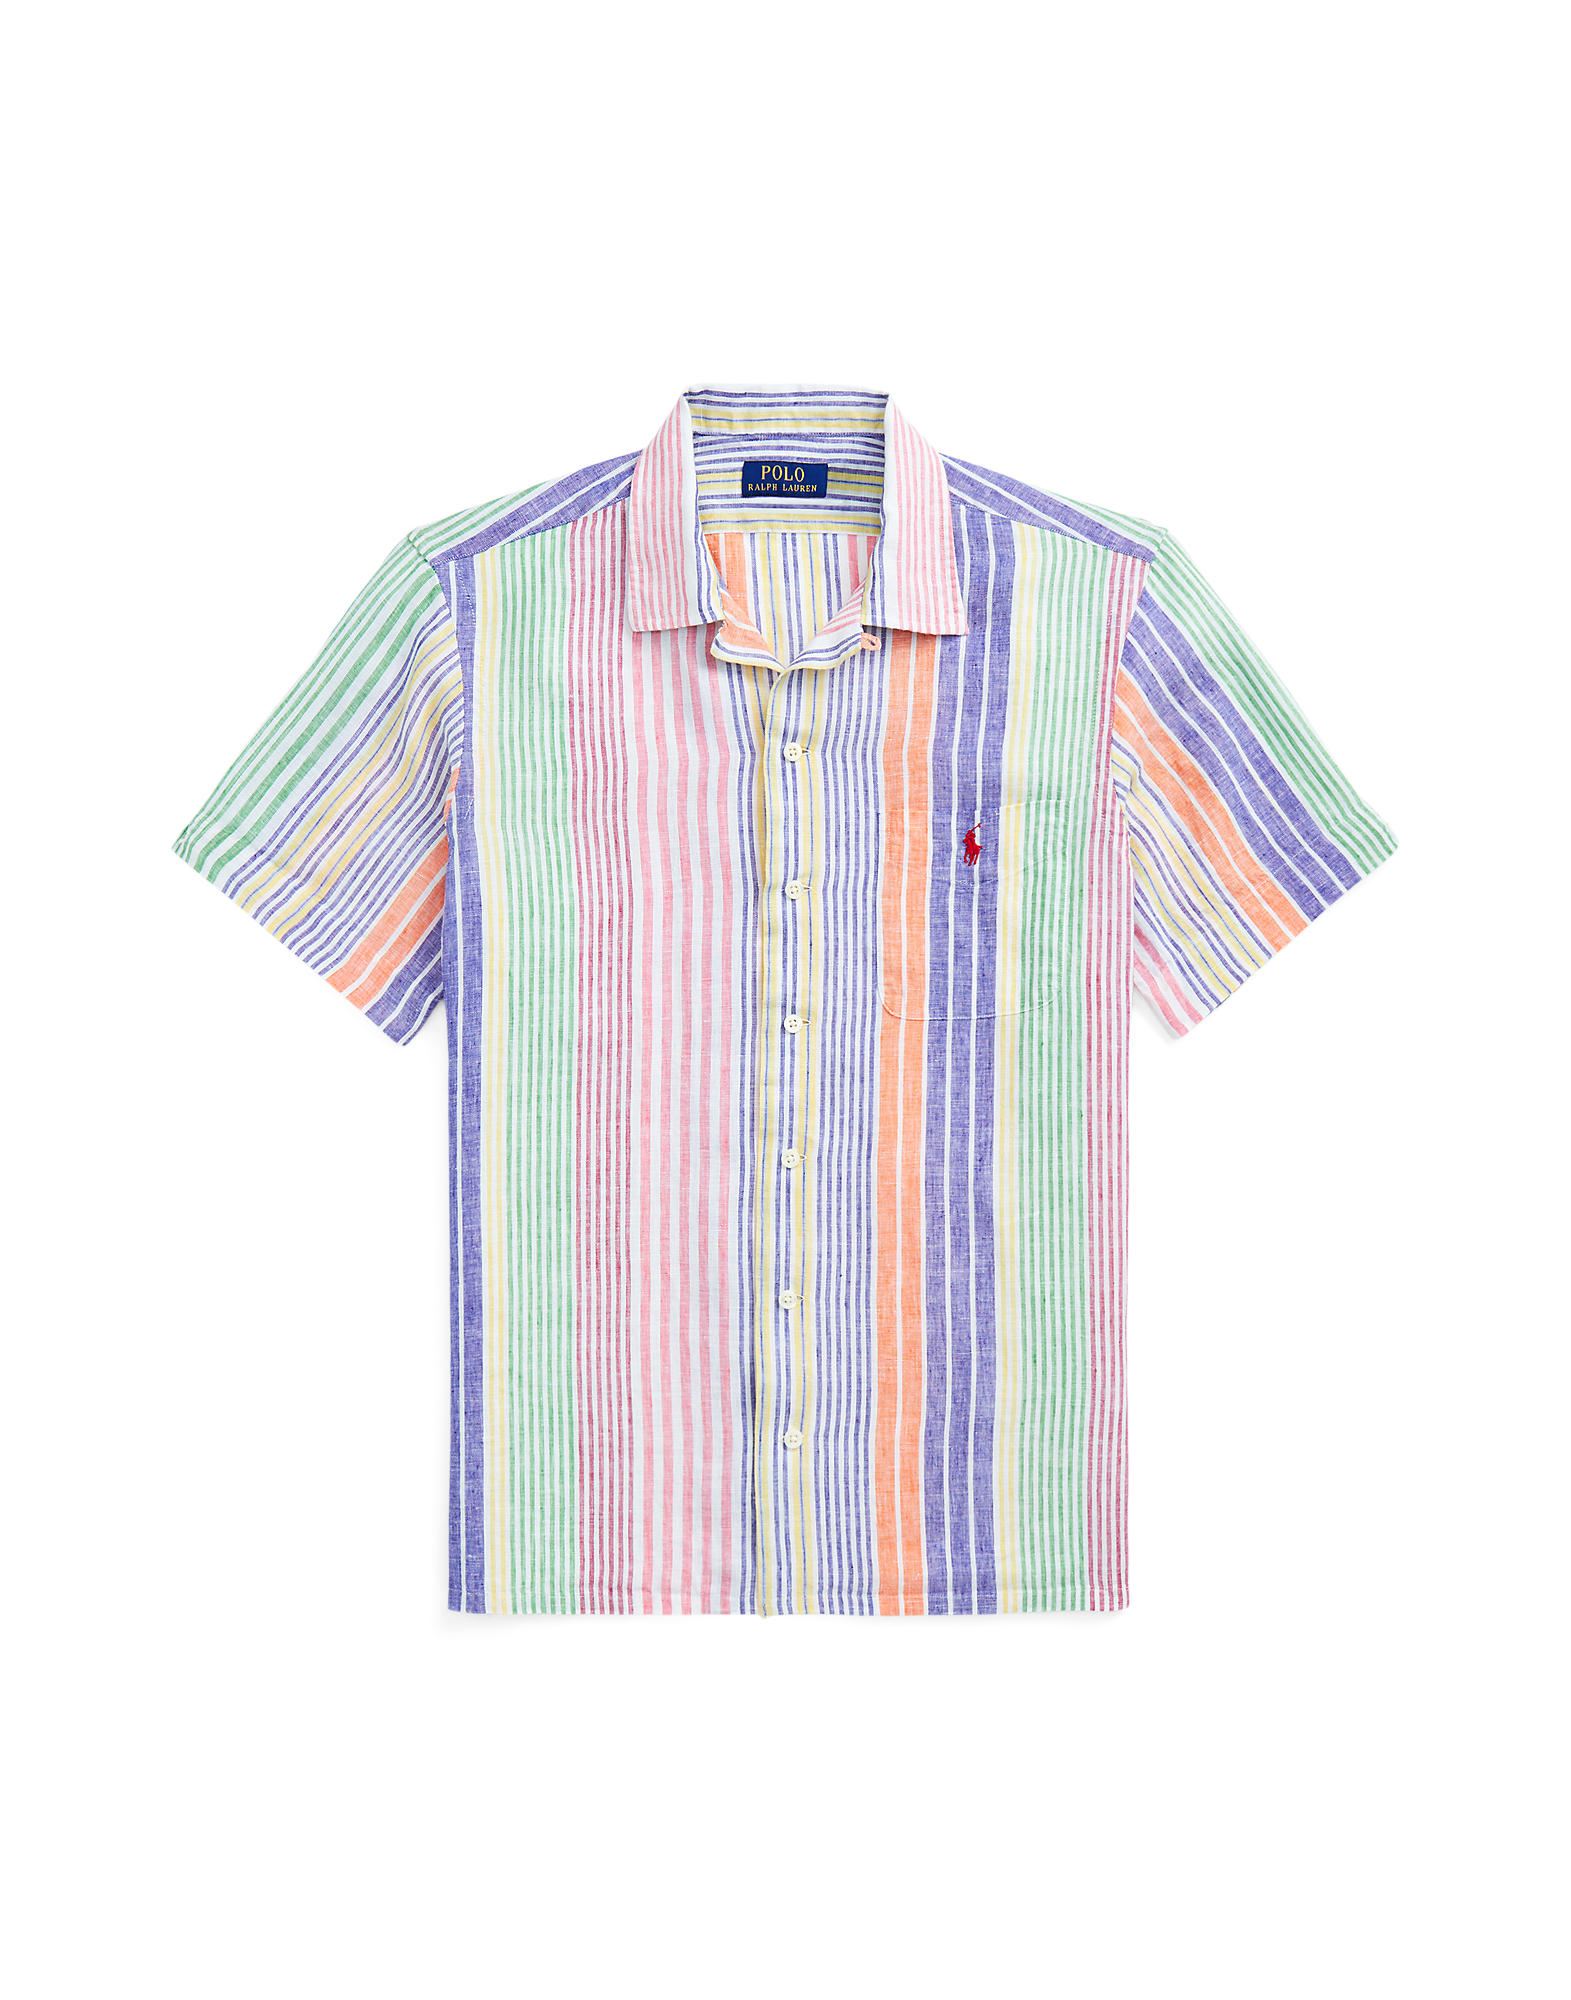 Shop Polo Ralph Lauren Classic Fit Striped Linen Camp Shirt Man Shirt Pink Size L Linen